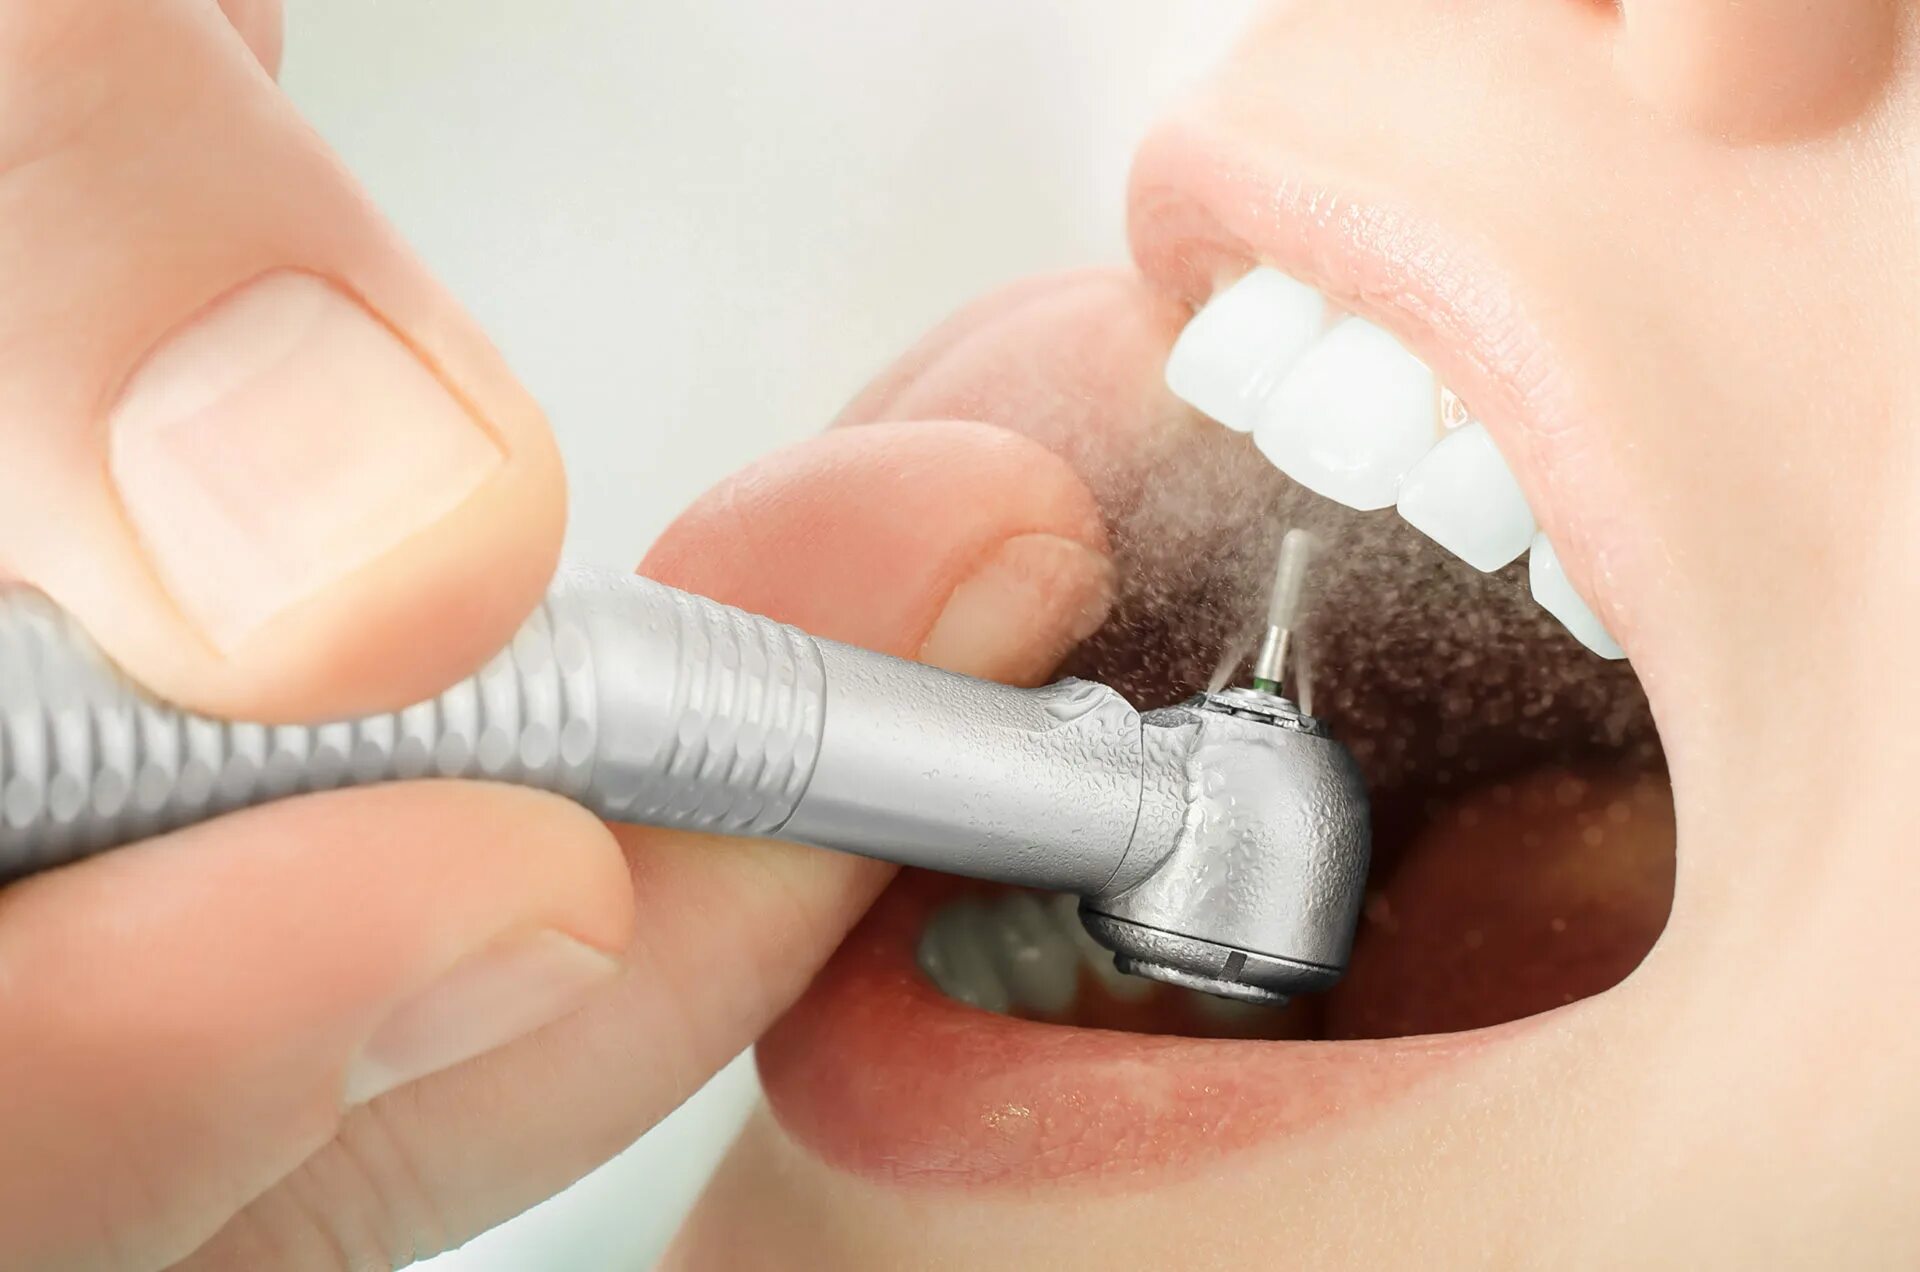 Аппарат АИР флоу стоматология. Профессиональная гигиена полости рта.